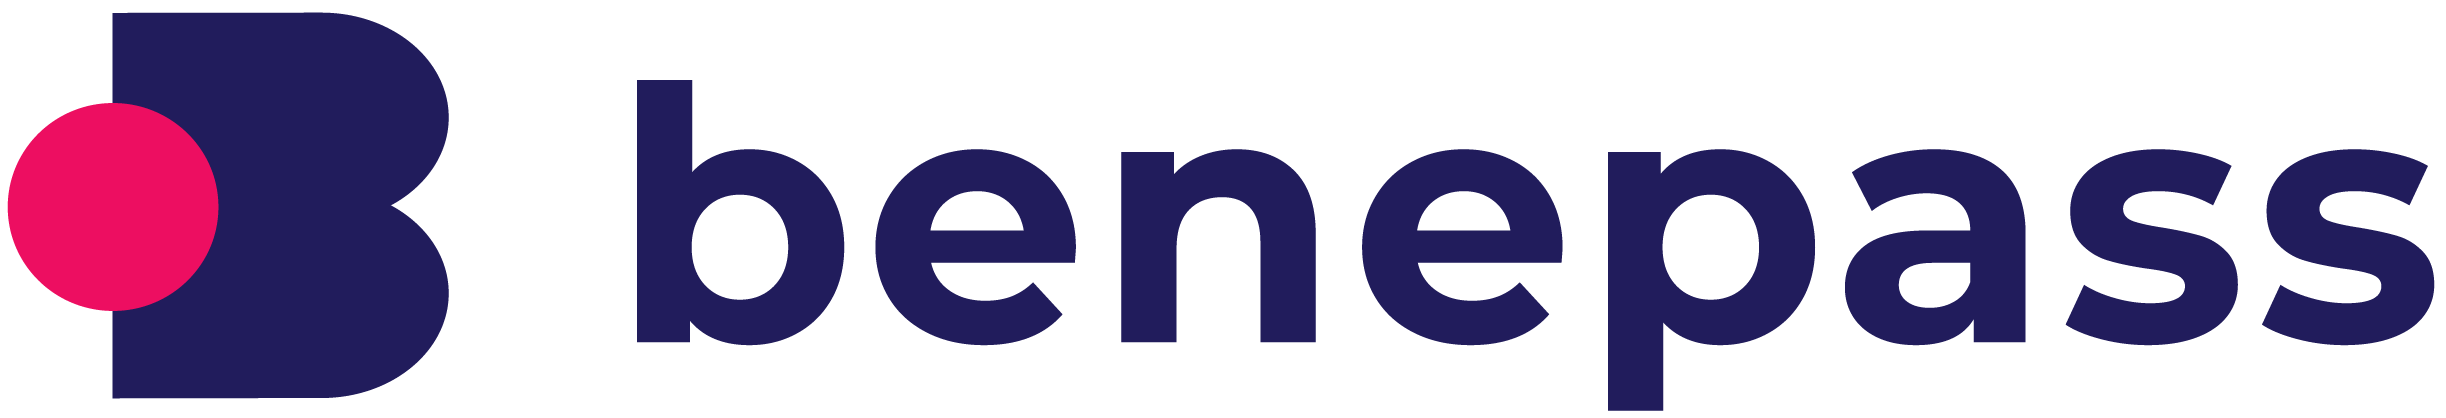 Benepass logo